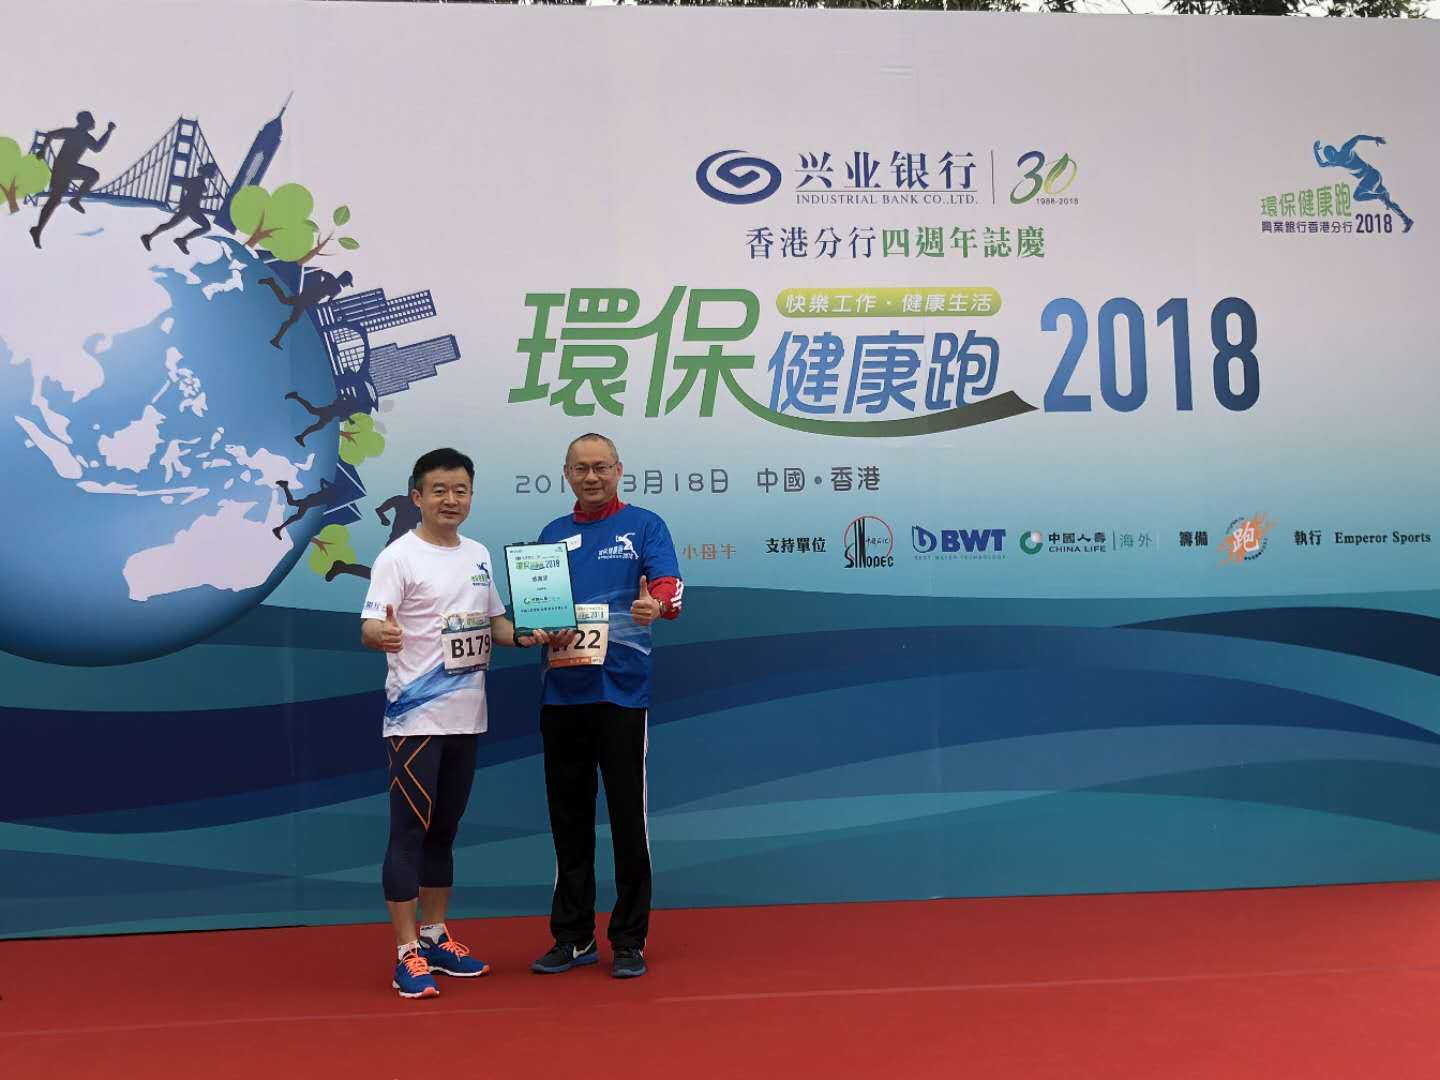 中国人寿(海外)香港分公司副总理尹建斌先生(右)代表公司接受奖状